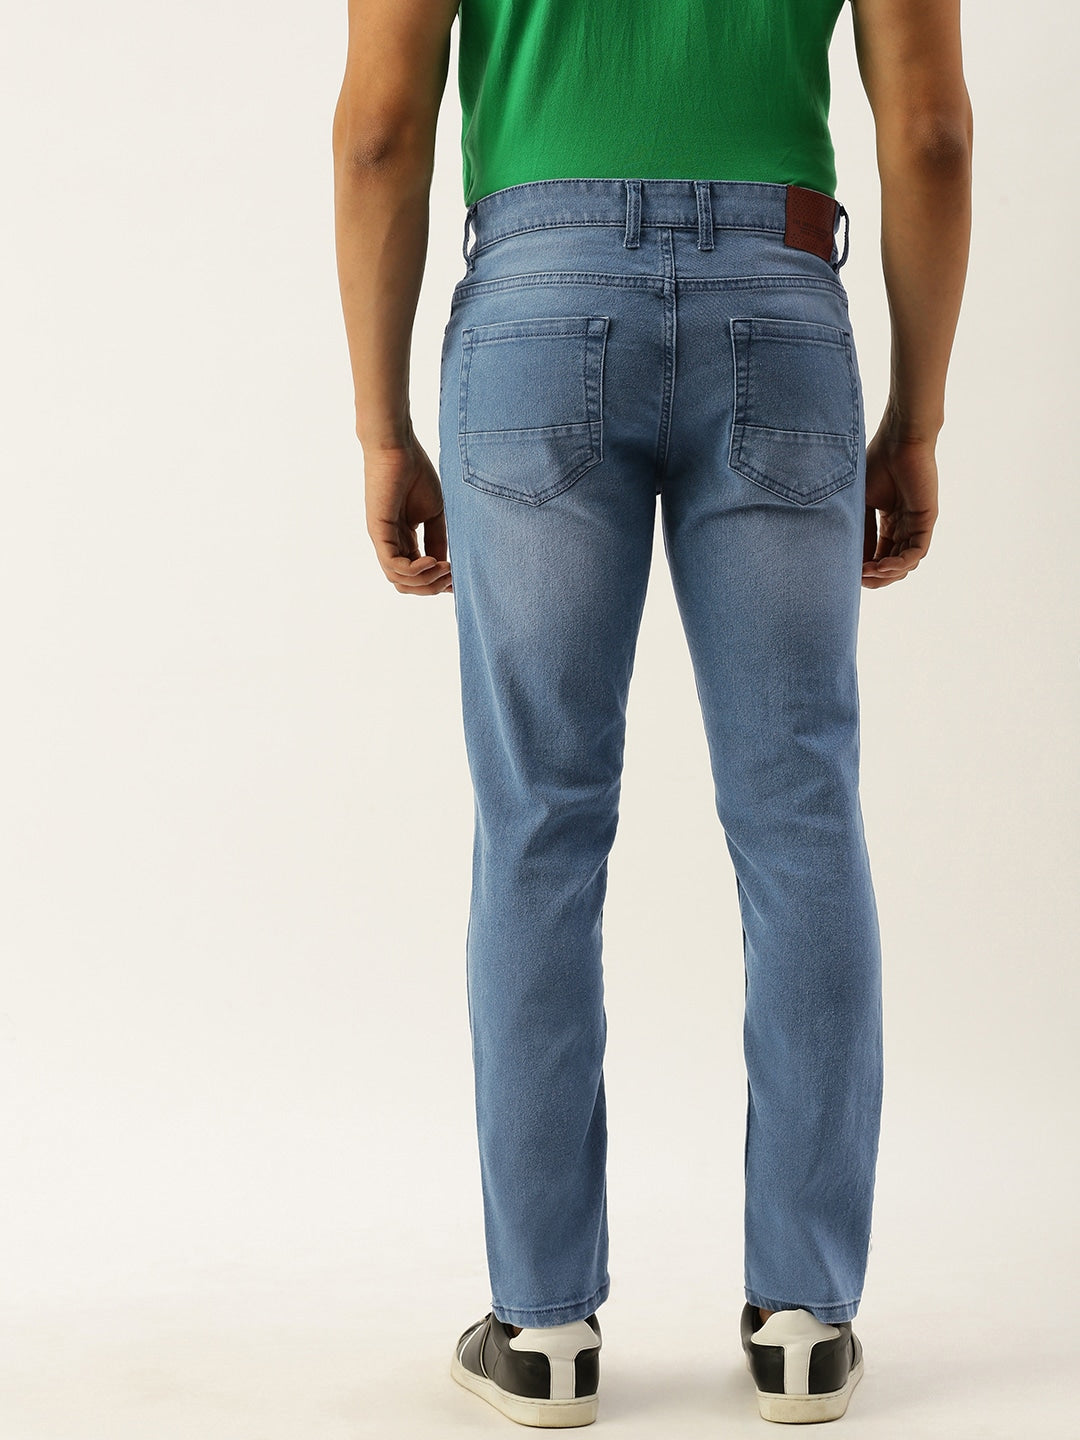 Shop Men Regular Jeans Online.